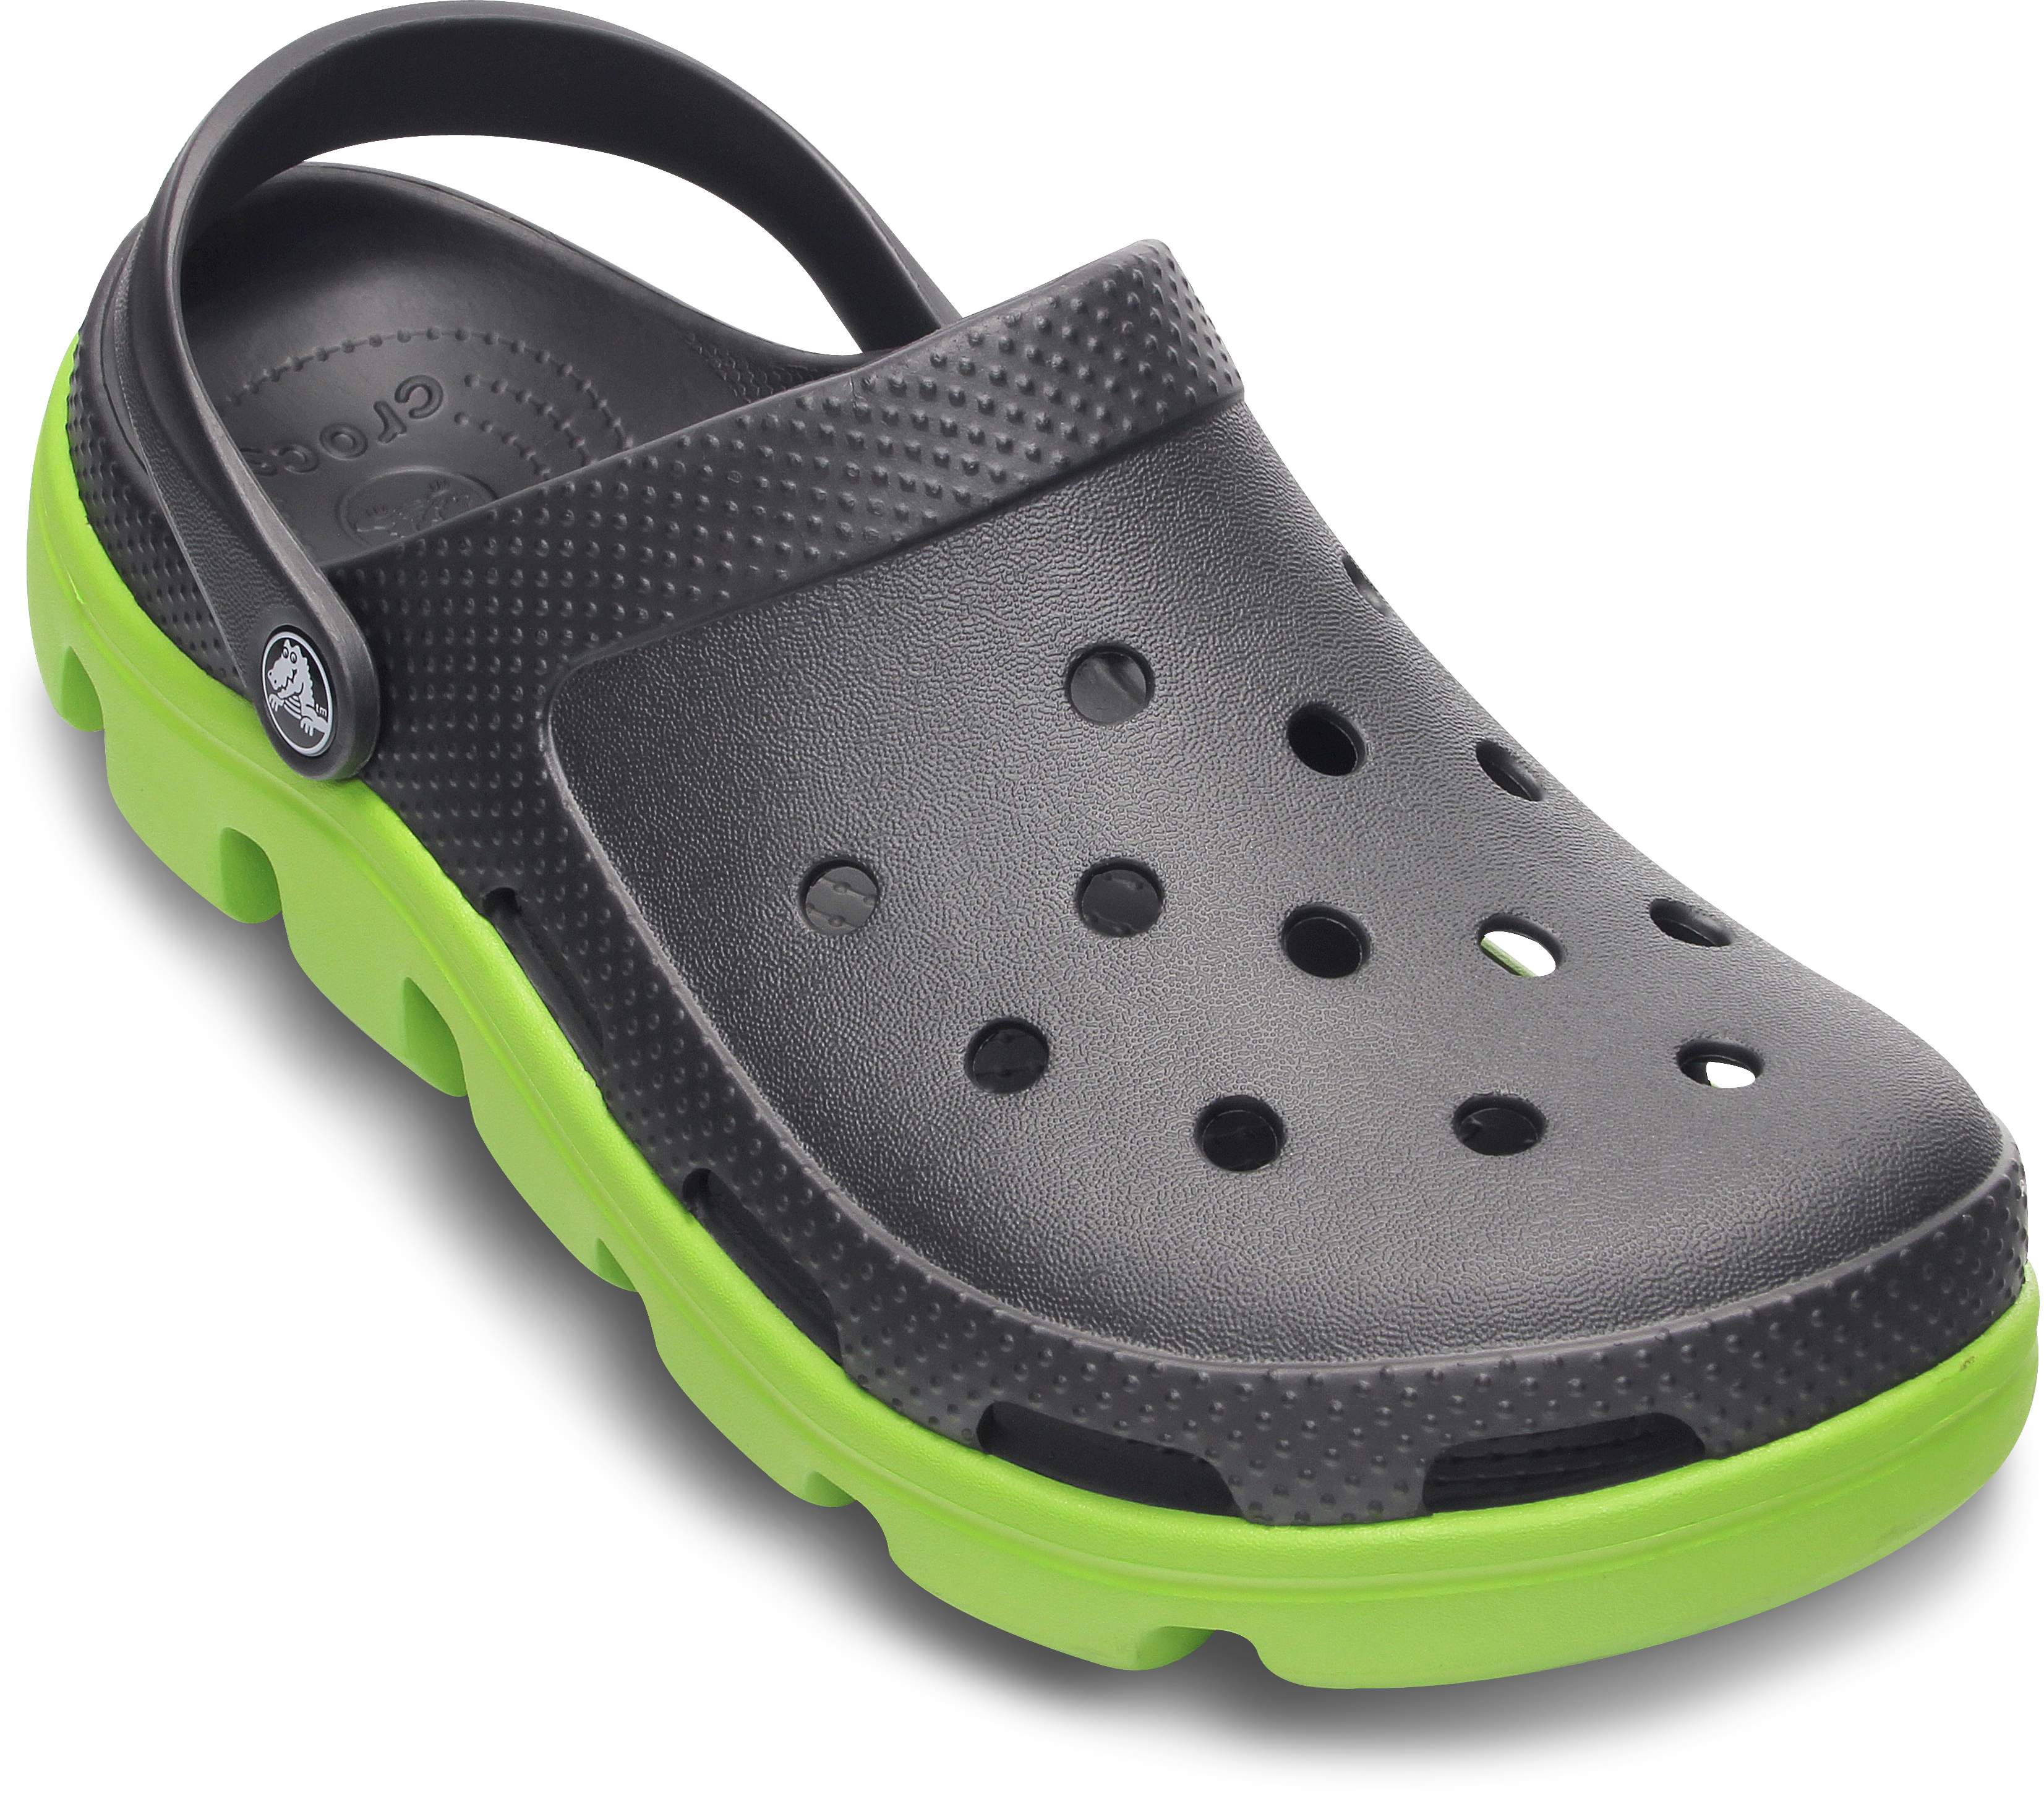 sports crocs